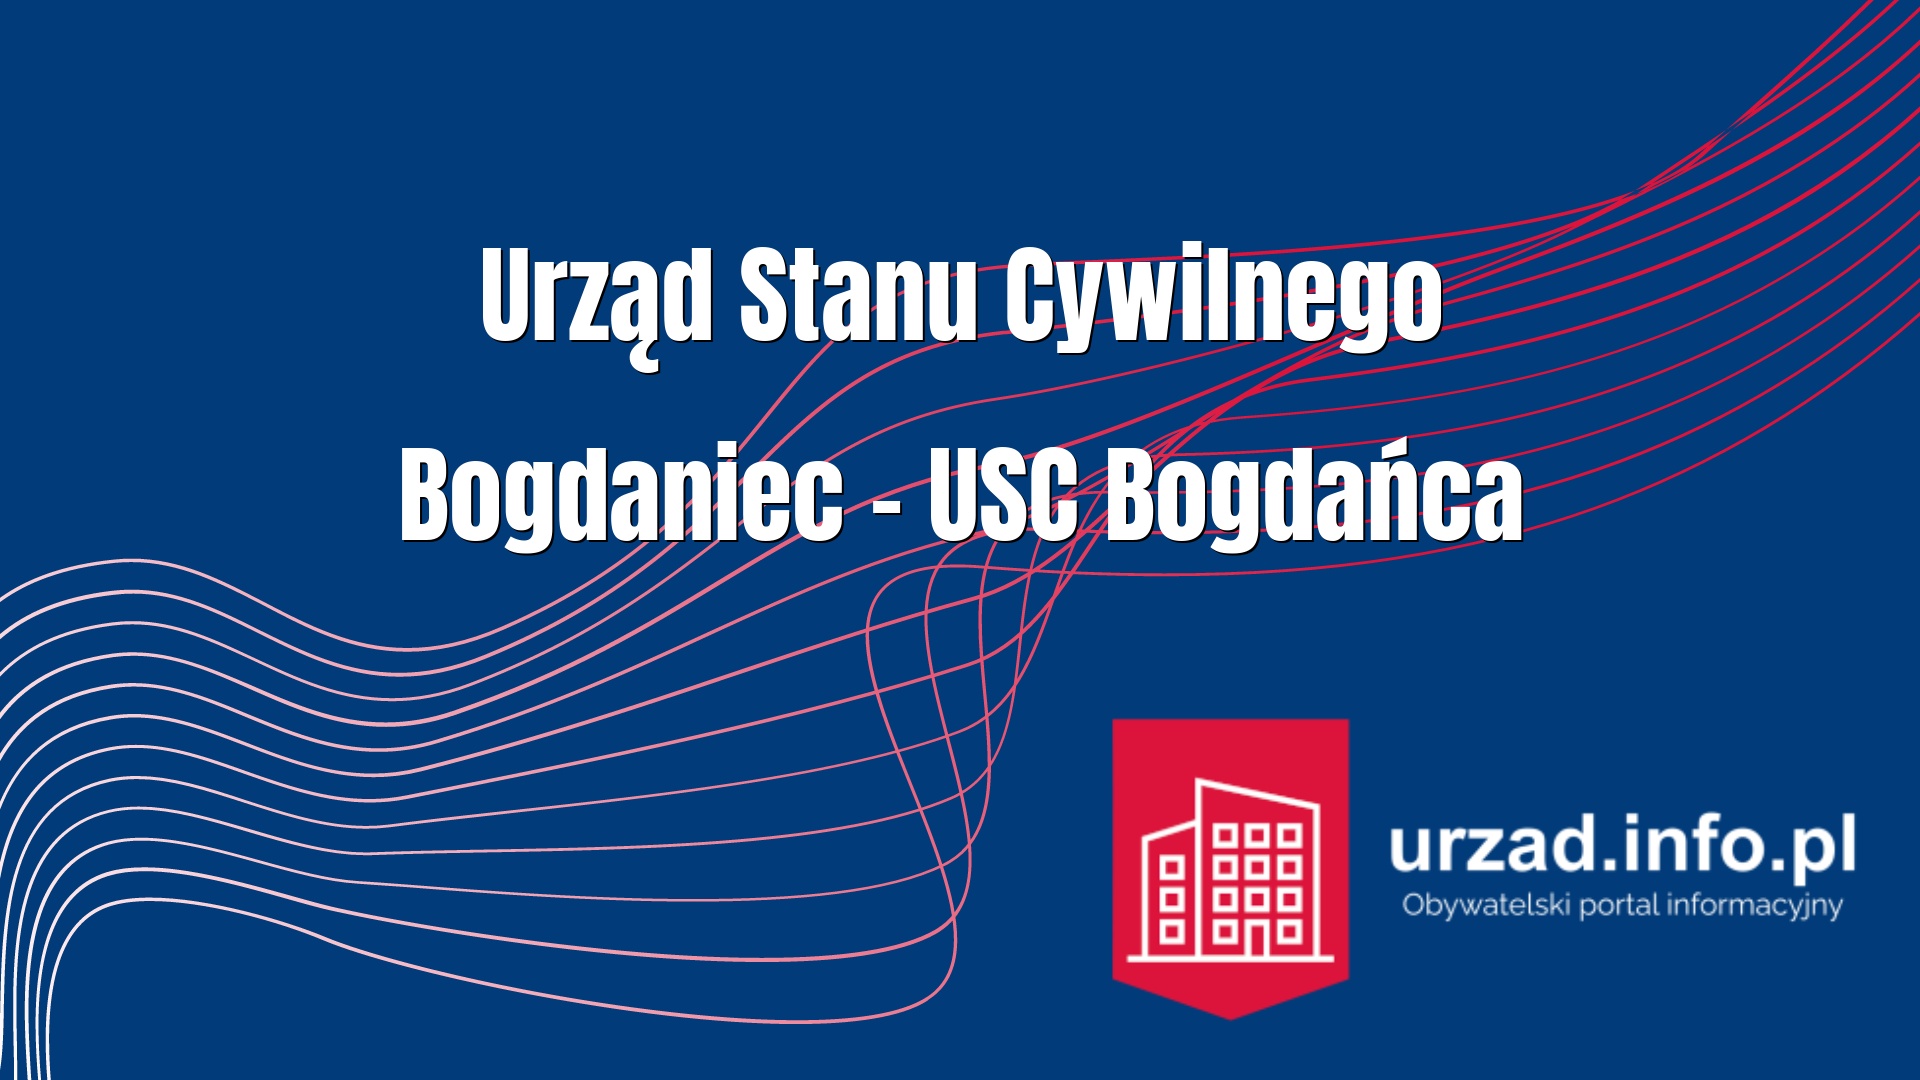 Urząd Stanu Cywilnego Bogdaniec – USC Bogdańca